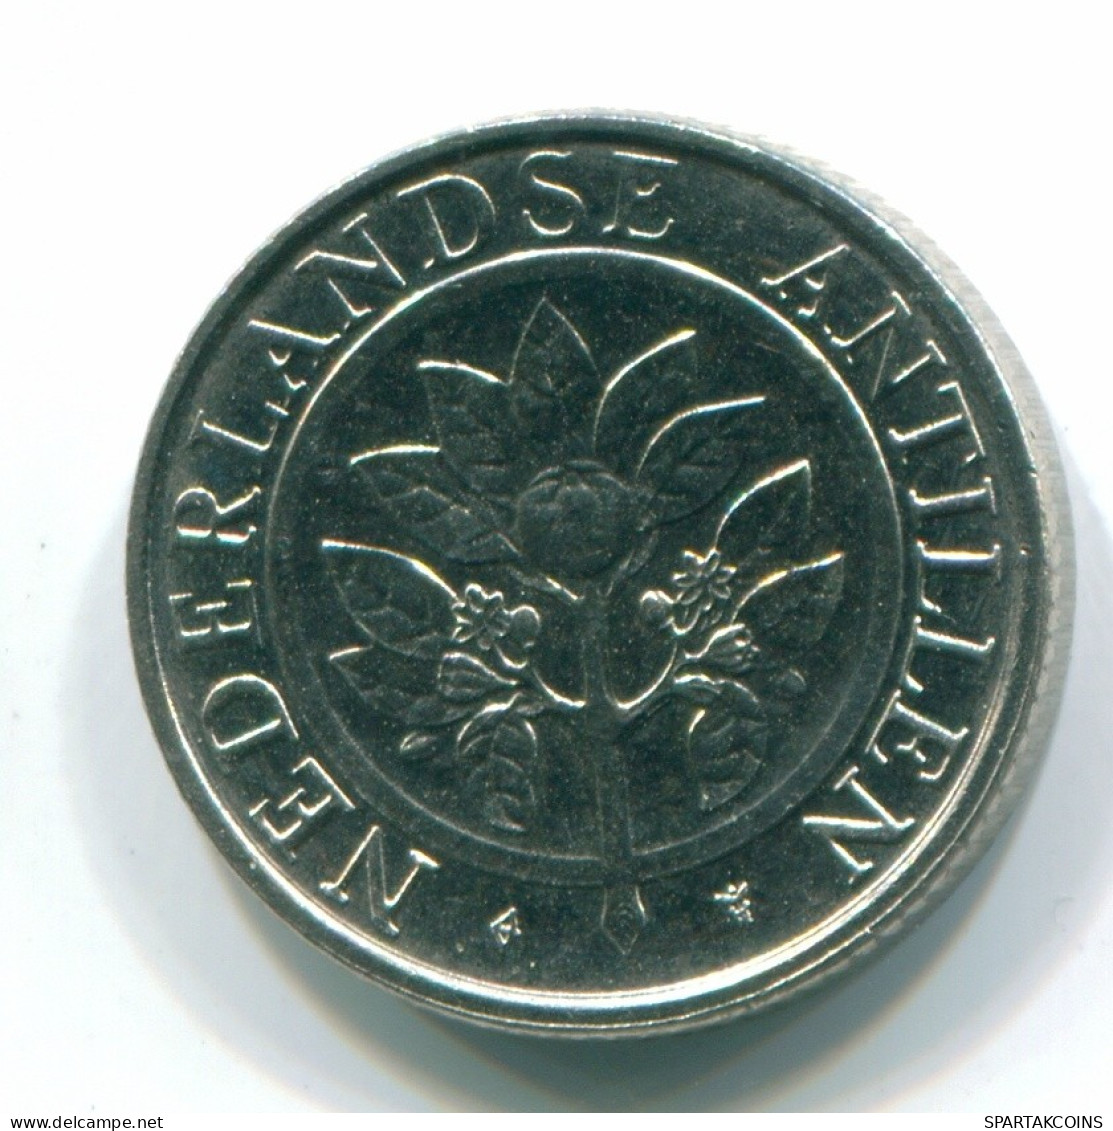 10 CENTS 1991 NETHERLANDS ANTILLES Nickel Colonial Coin #S11320.U.A - Niederländische Antillen